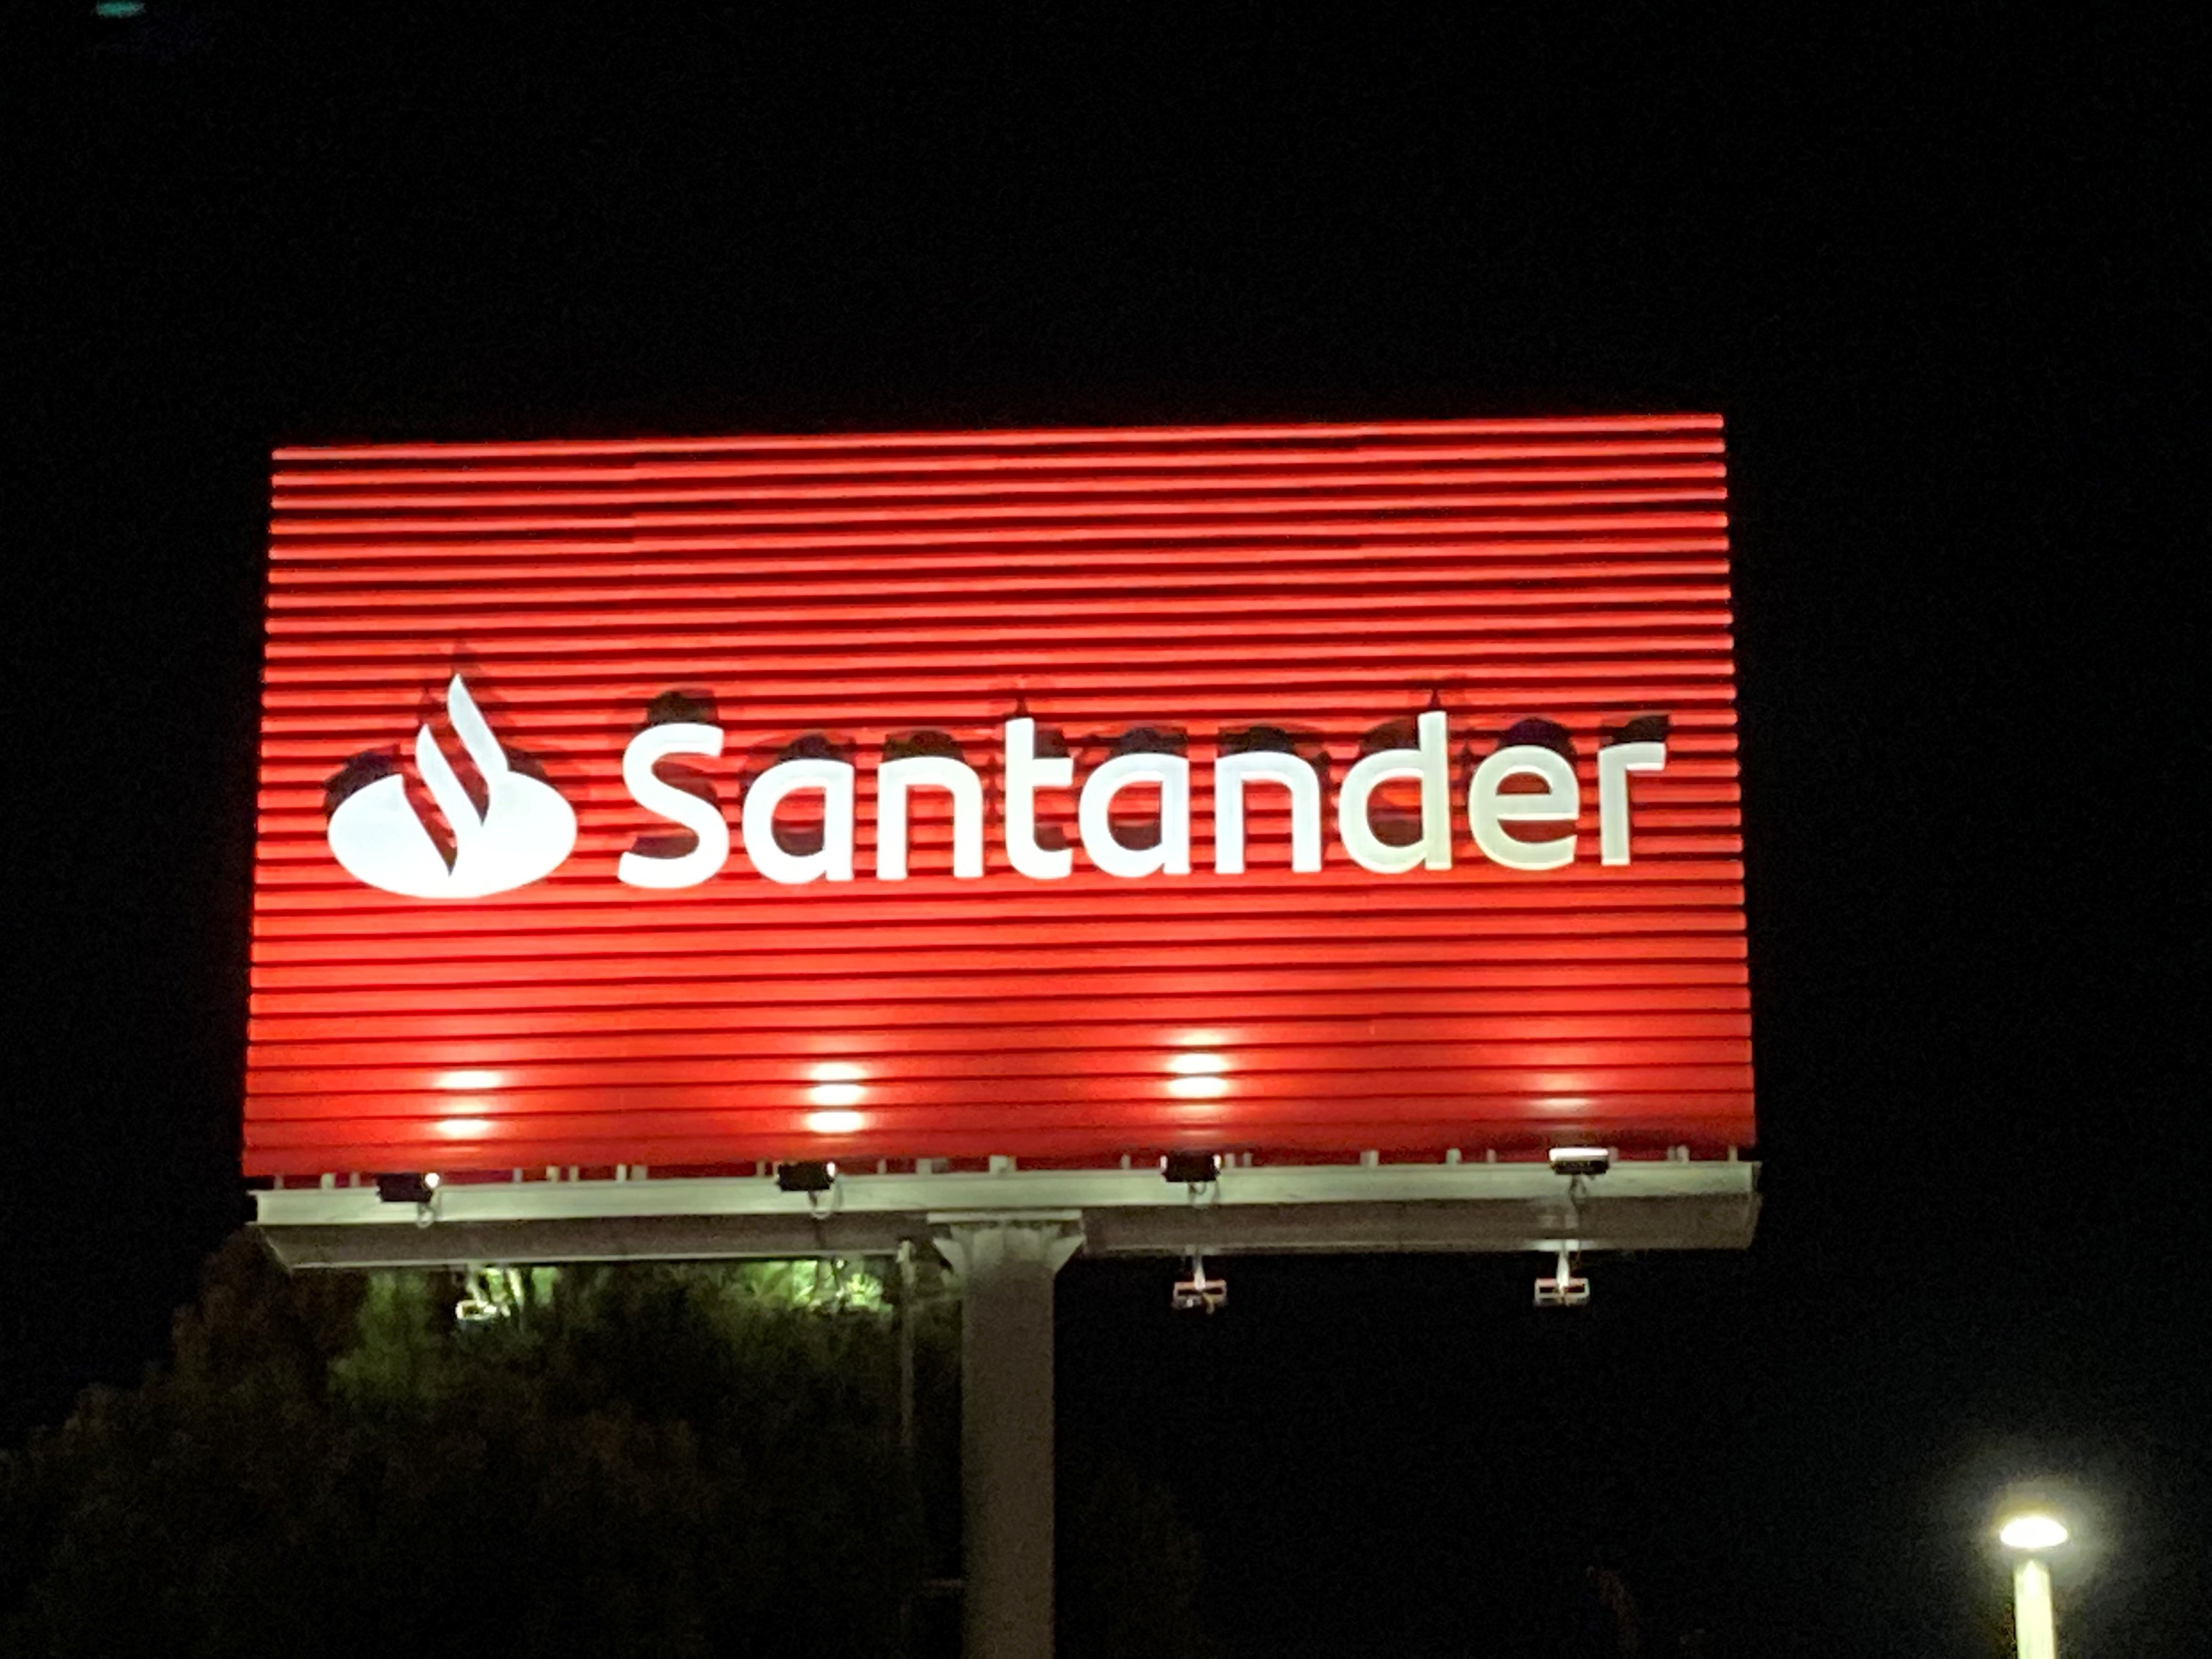 Santander podría ser uno de los que compre Citibanamex, de acuerdo a analistas financieros (Foto: Europa Press/Banco Santander)
